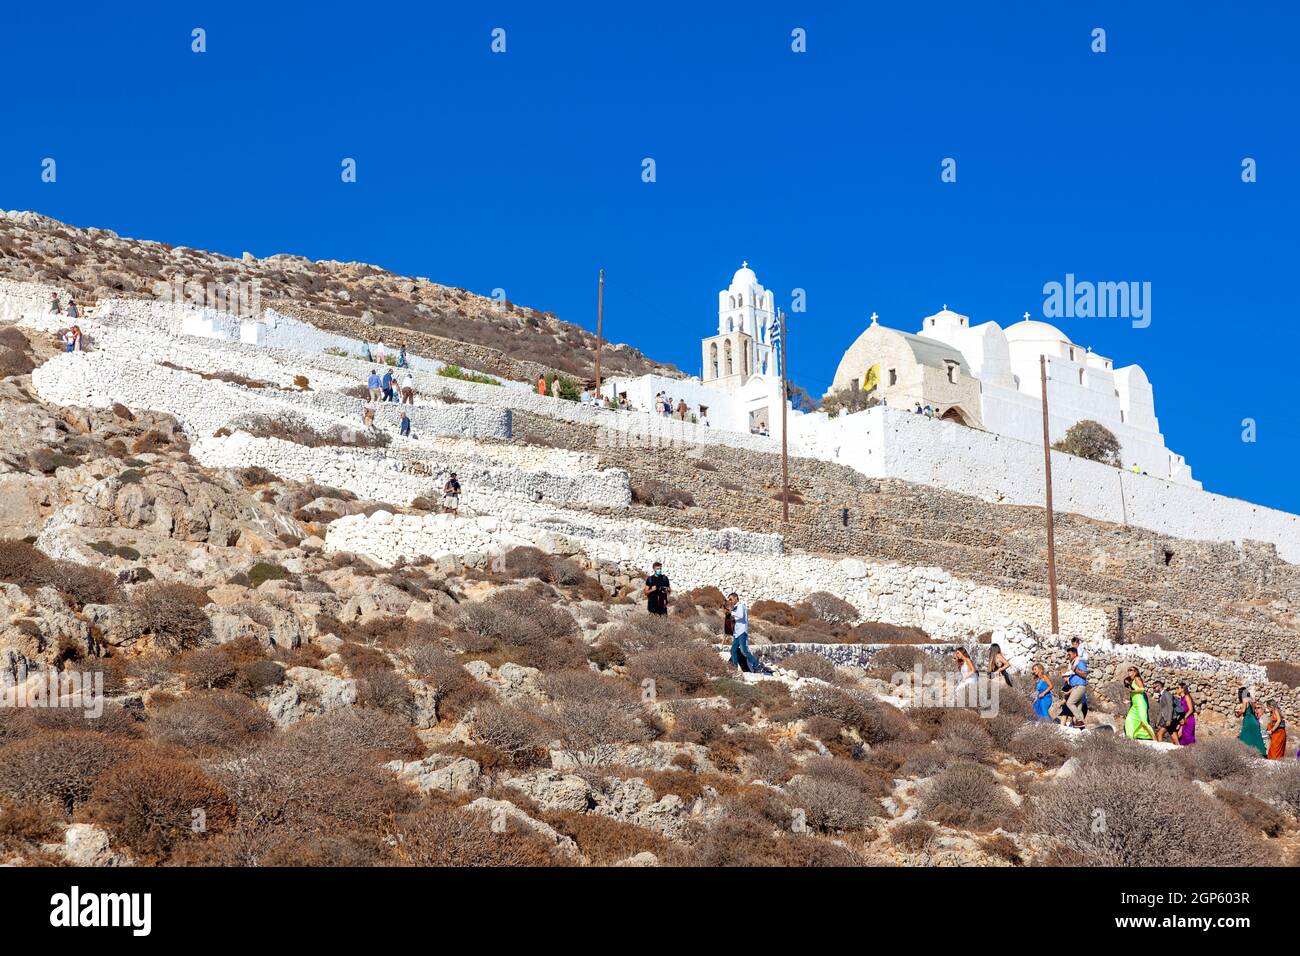 Isola greca di Folegandros, votata come la seconda isola migliore del mondo dai lettori più esigenti della rivista Travel + Leisure, per il 2021! Foto Stock